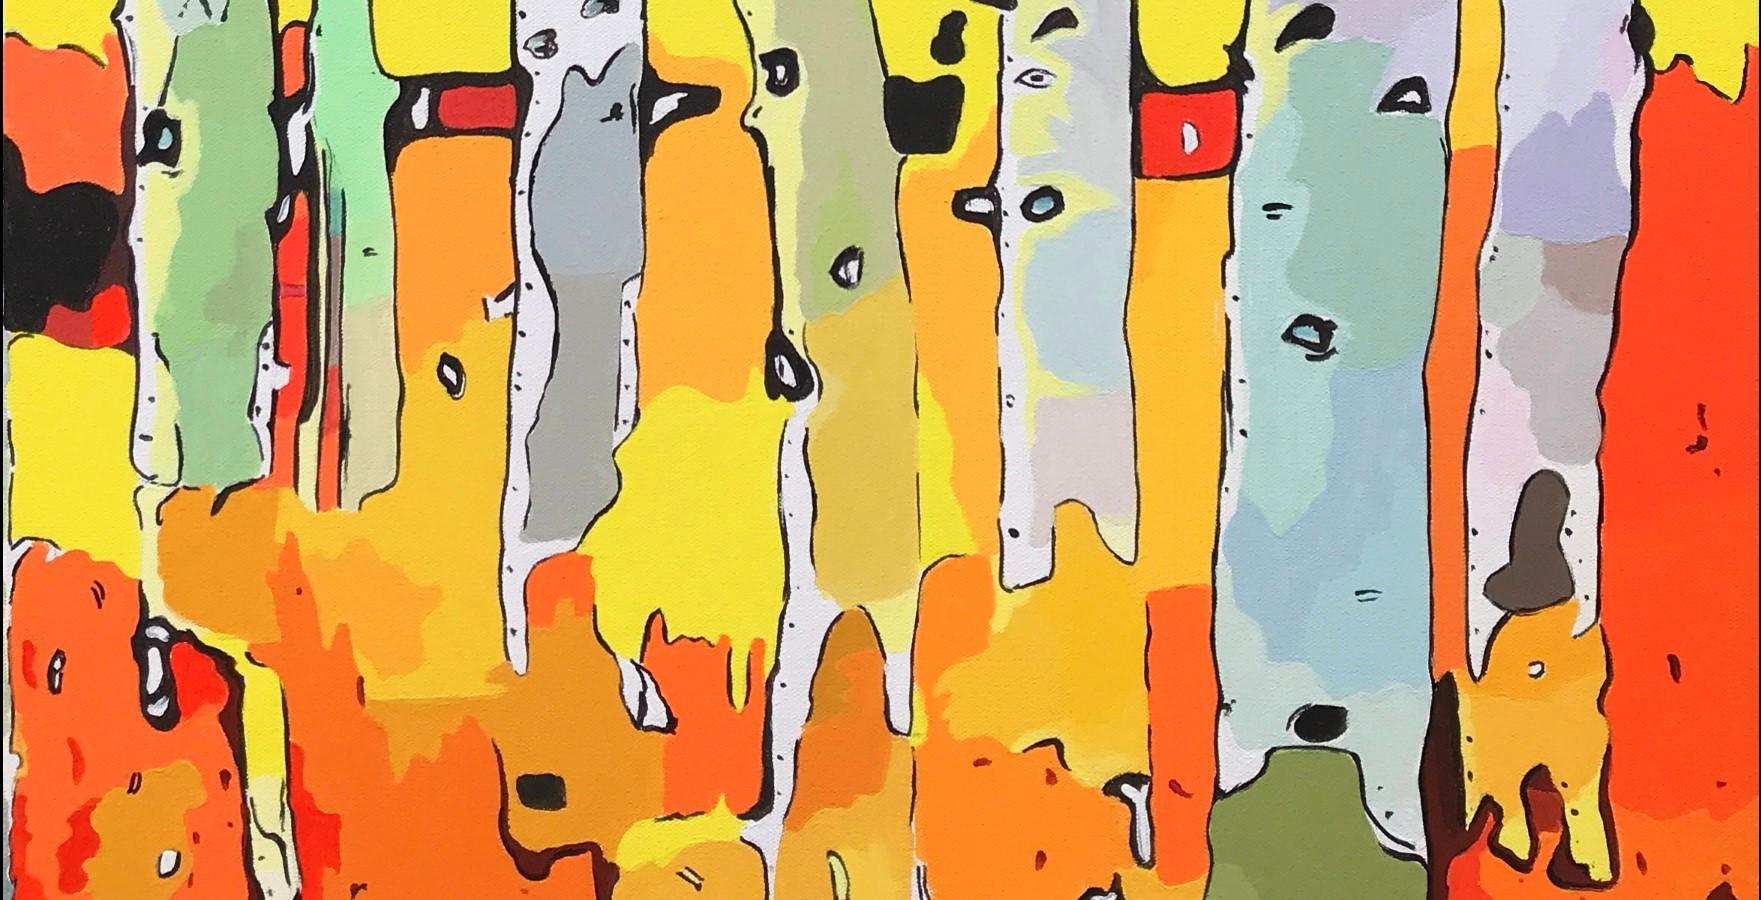 <p>Kommentare des Künstlers<br>Der Künstler John Jaster zeigt einen Wald mit hohen Espen, die in einem spielerisch abstrakten Stil dargestellt sind. Kräftige Gelb-, Orange- und Rottöne erinnern an einen warmen Herbsttag im Wald. In seinem Prozess